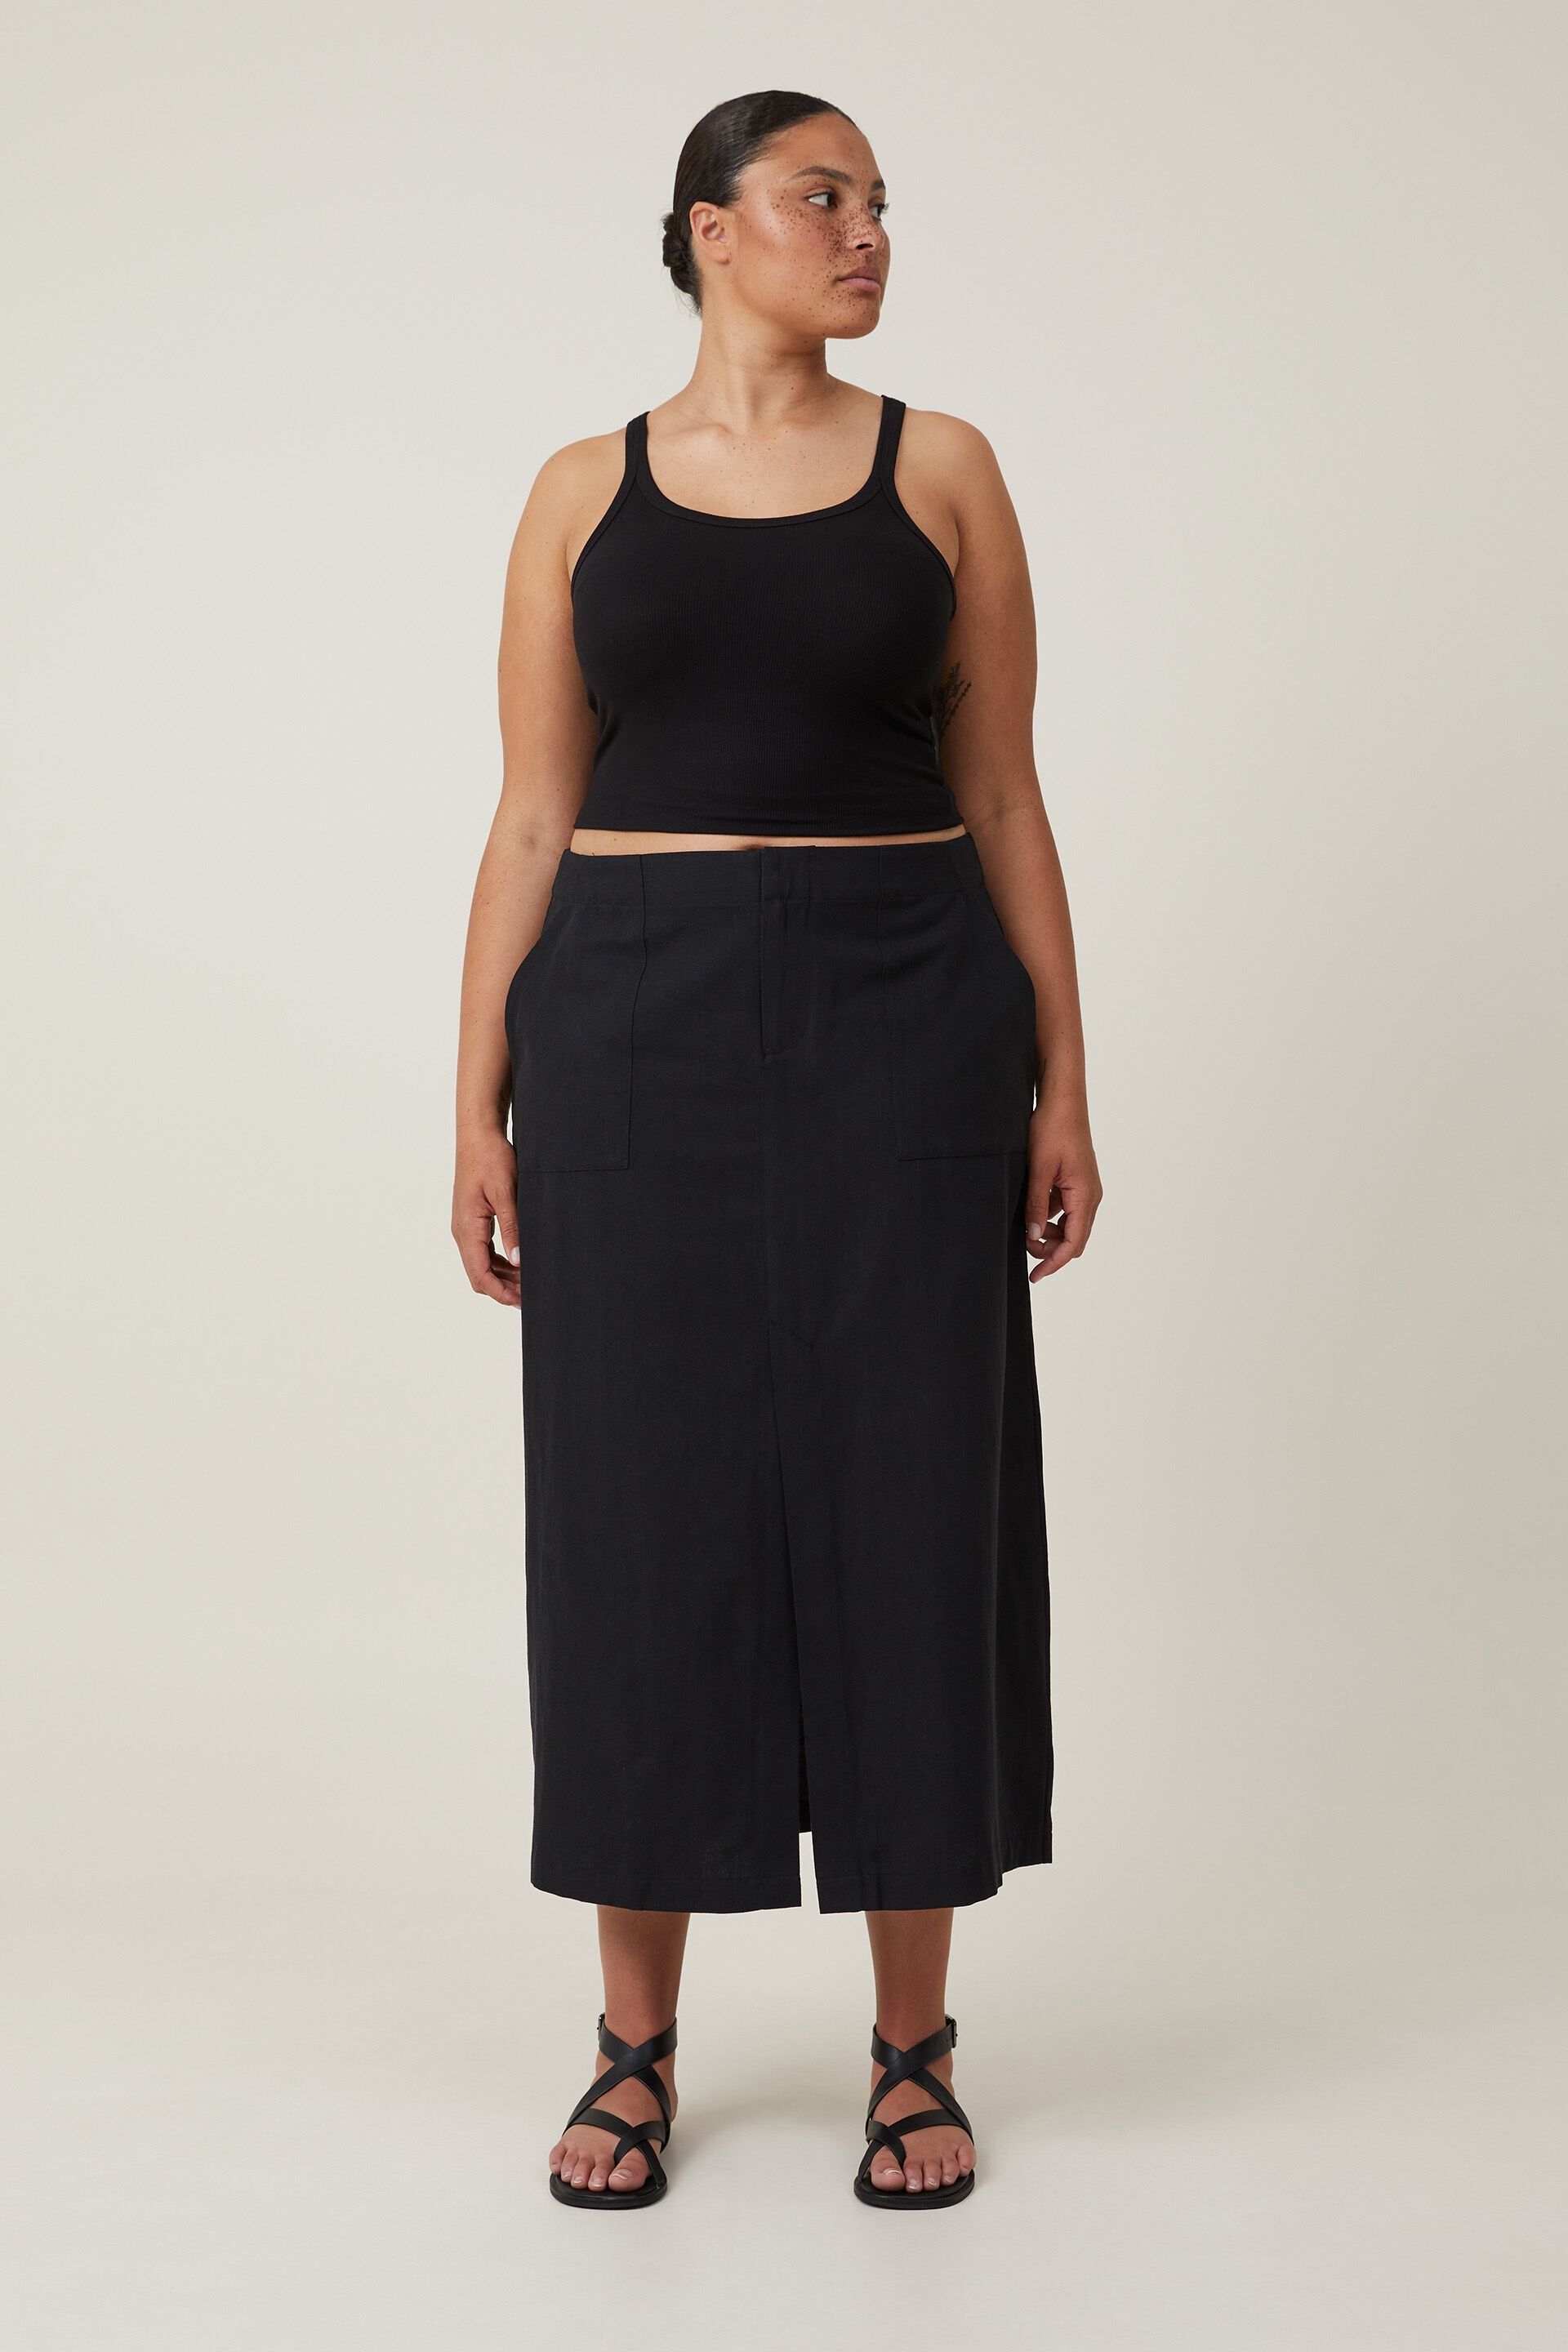 Buy Bitterlime Black Midi A Line Skirt  Skirts for Women 8224951  Myntra